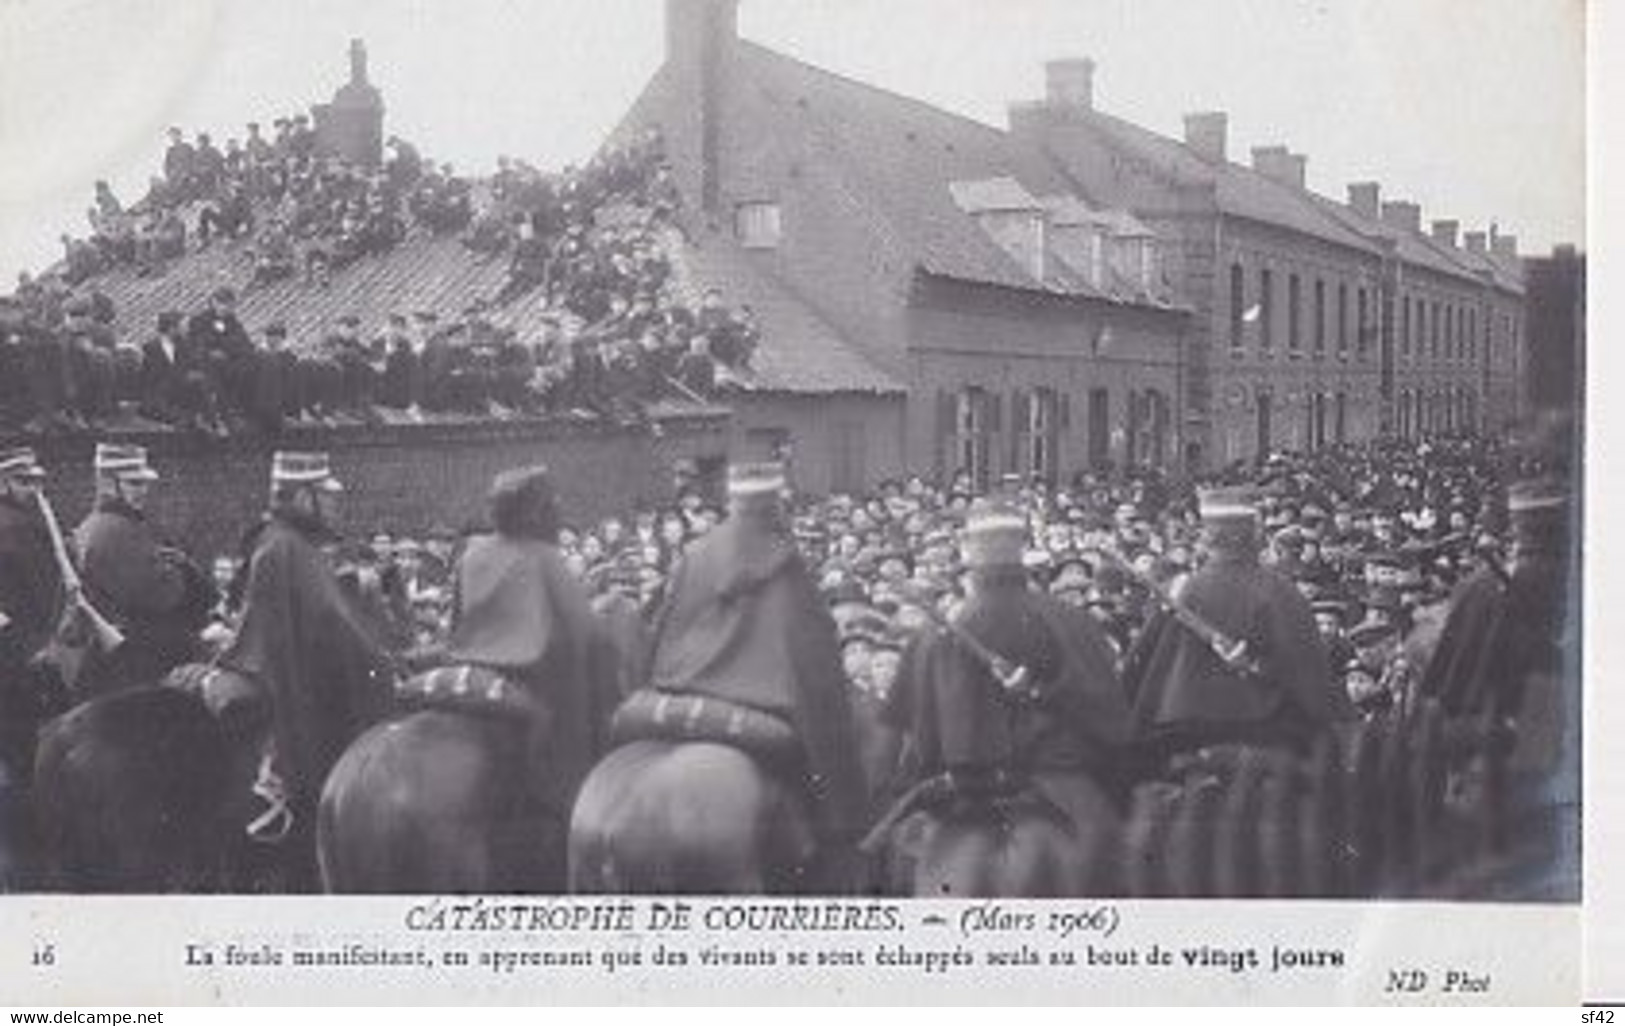 CATASTROPHE DE COURRIERES   MARS 1906       LA FOULE MANIFESTANT......VINGT JOURS - Mijnen